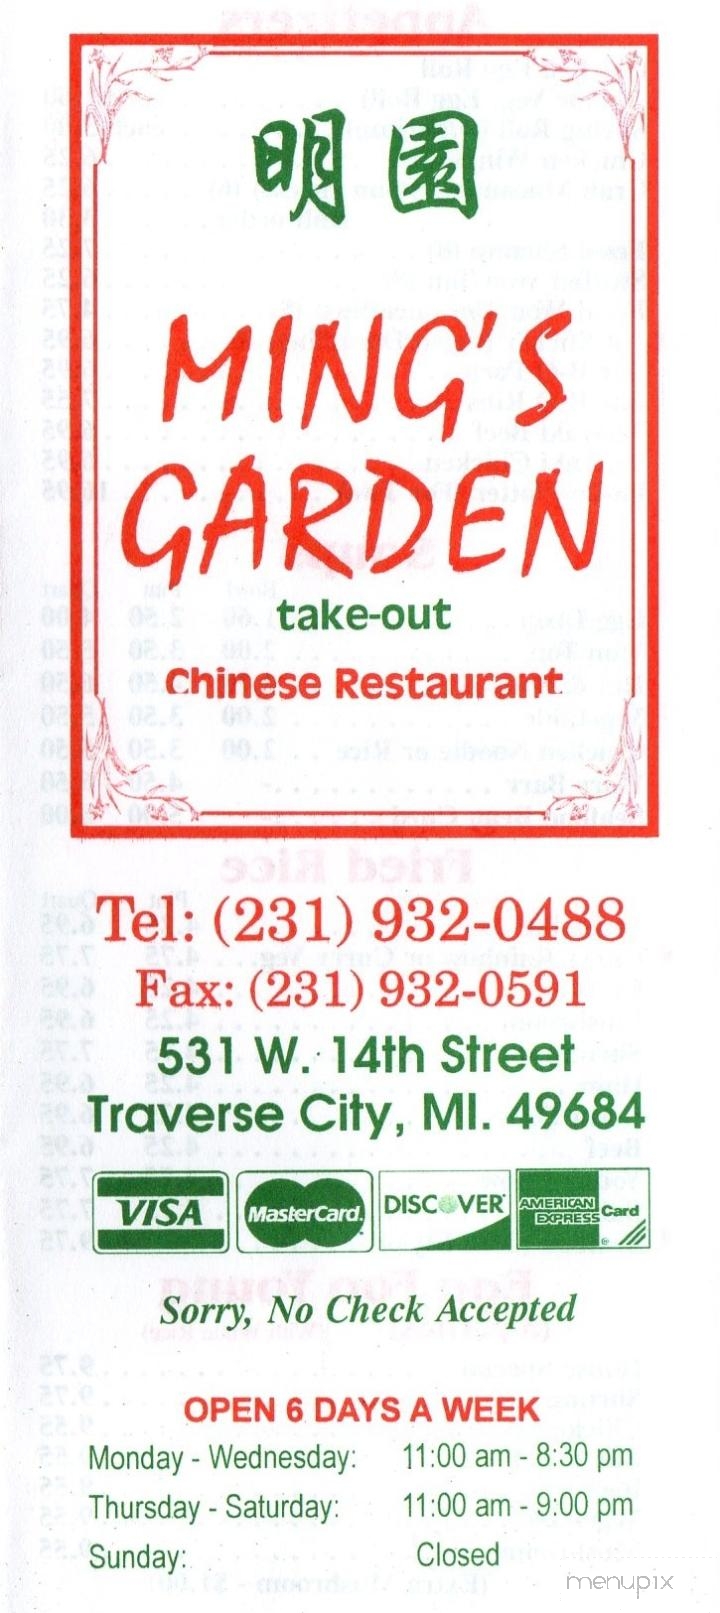 Ming's Garden - Traverse City, MI